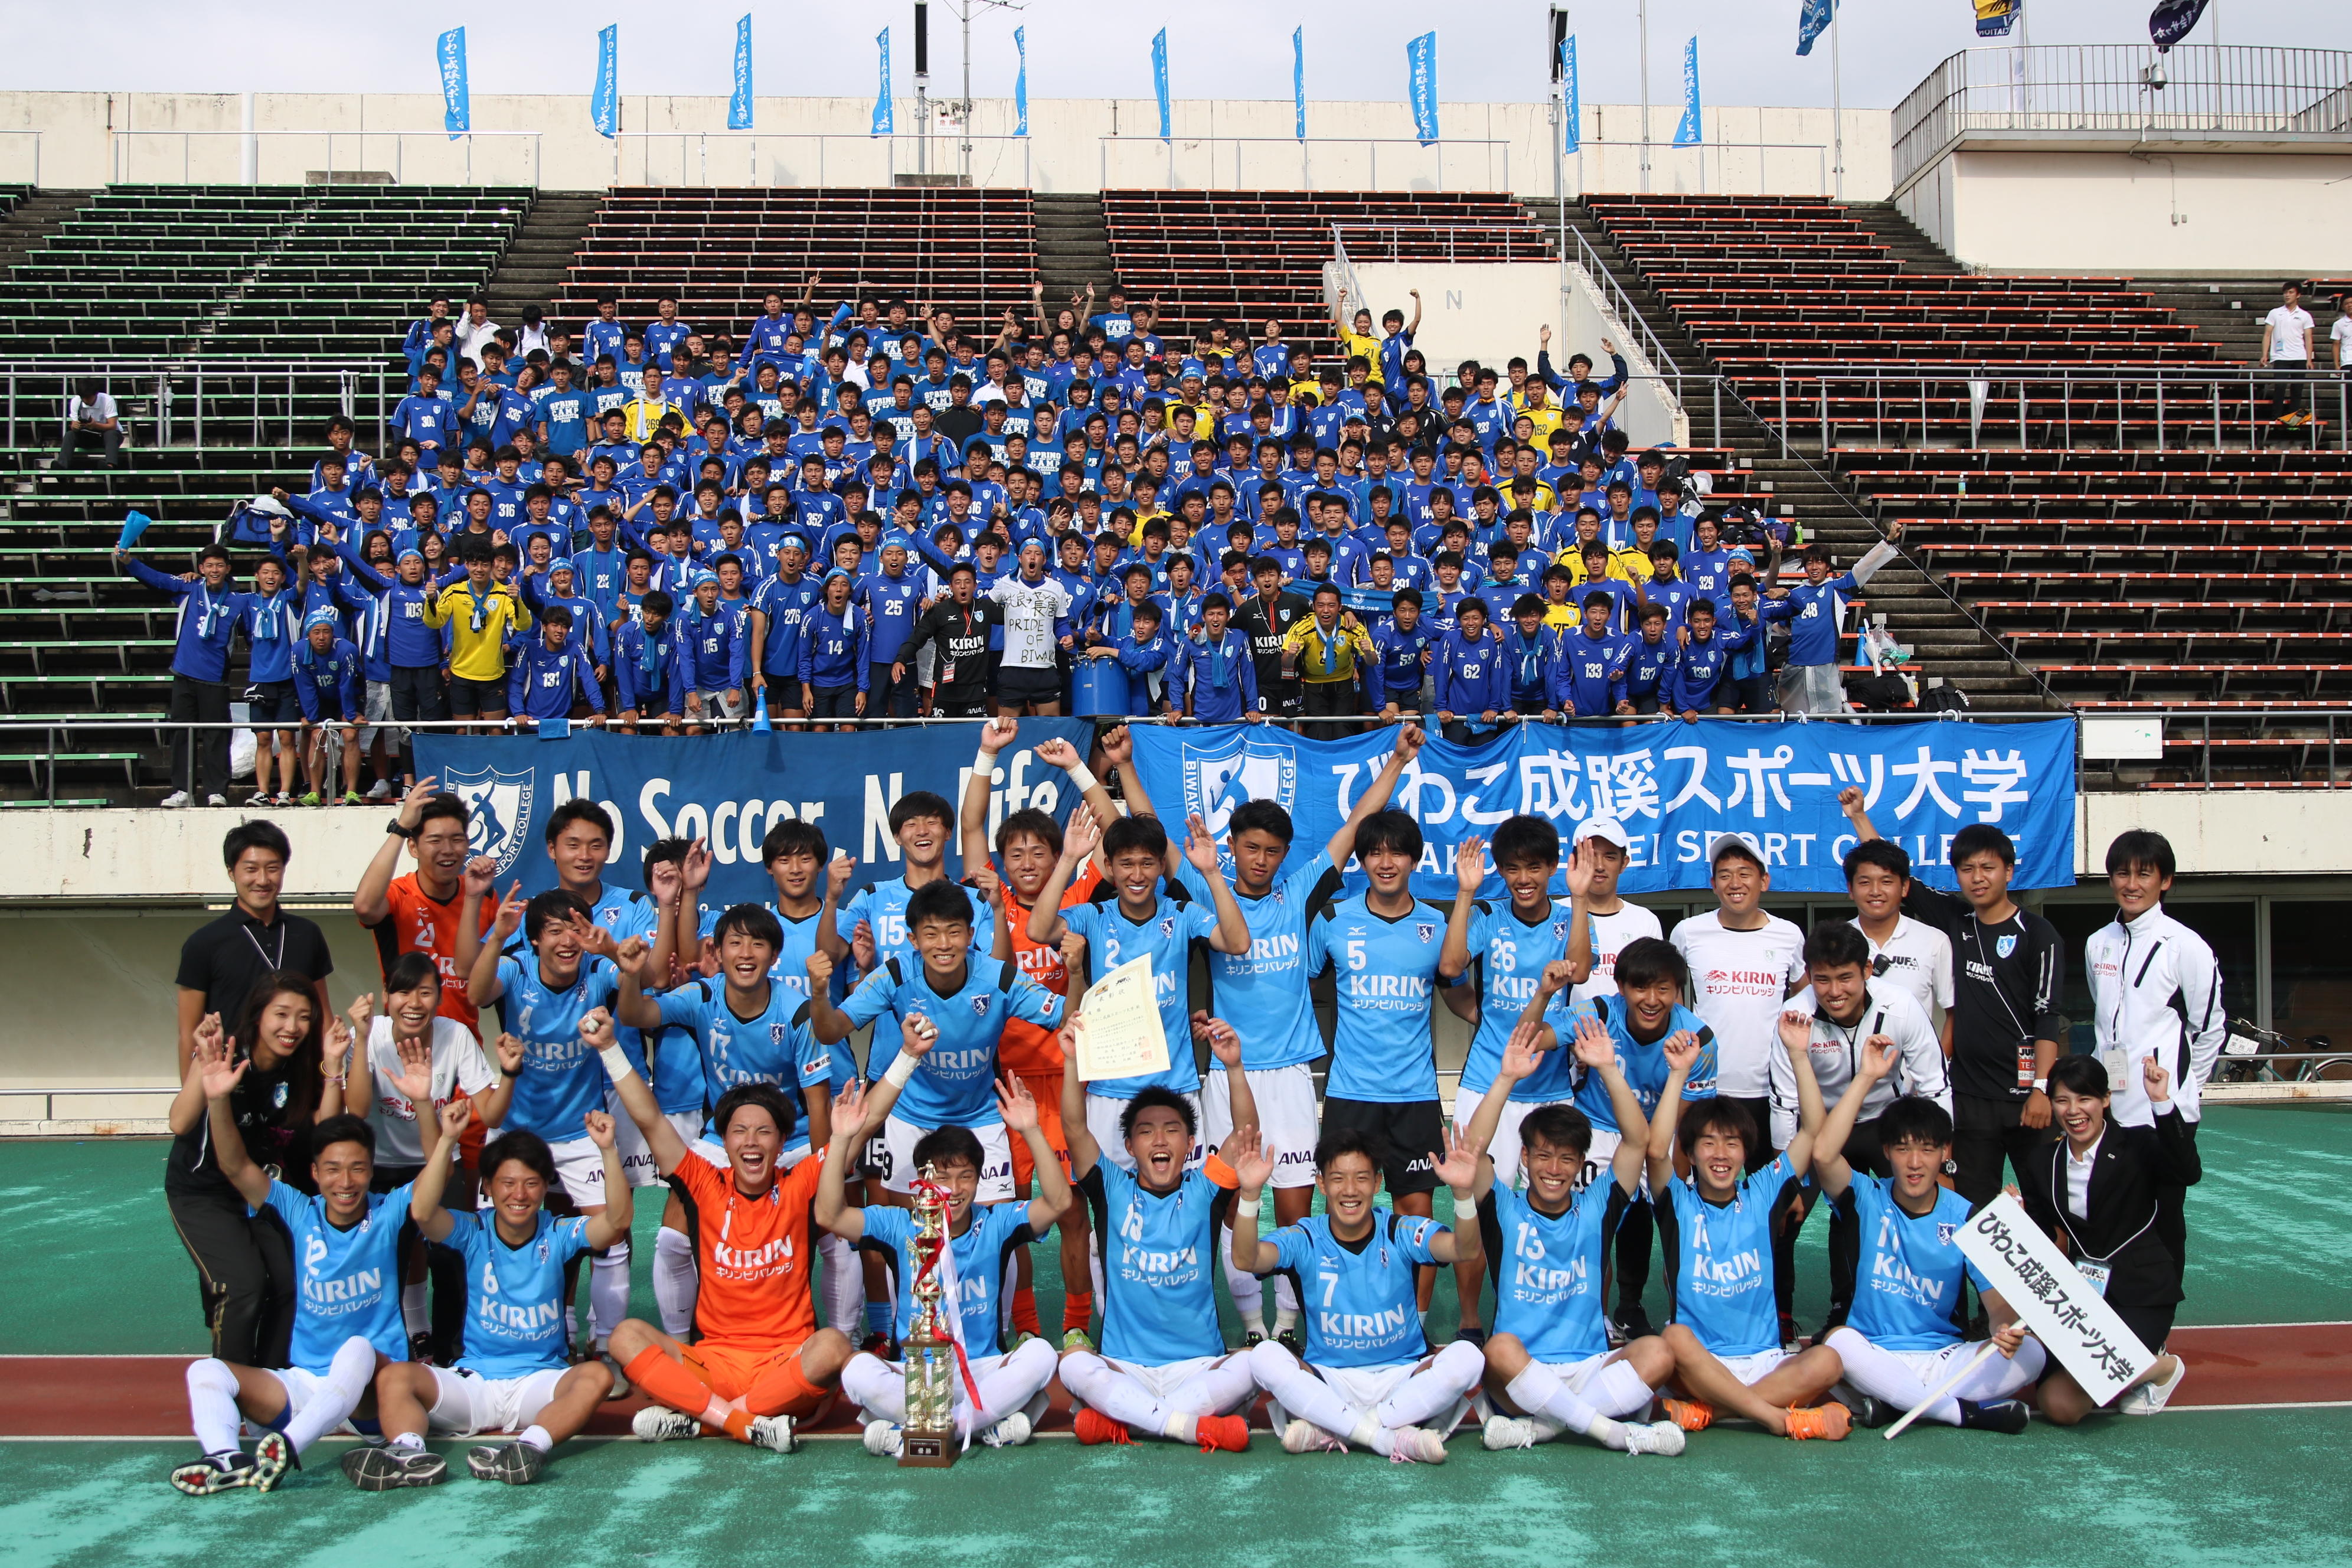 びわこ成蹊スポーツ大学サッカー部（男子）が関西選手権で初優勝 -- 総理大臣杯に関西地区第1代表として出場決定